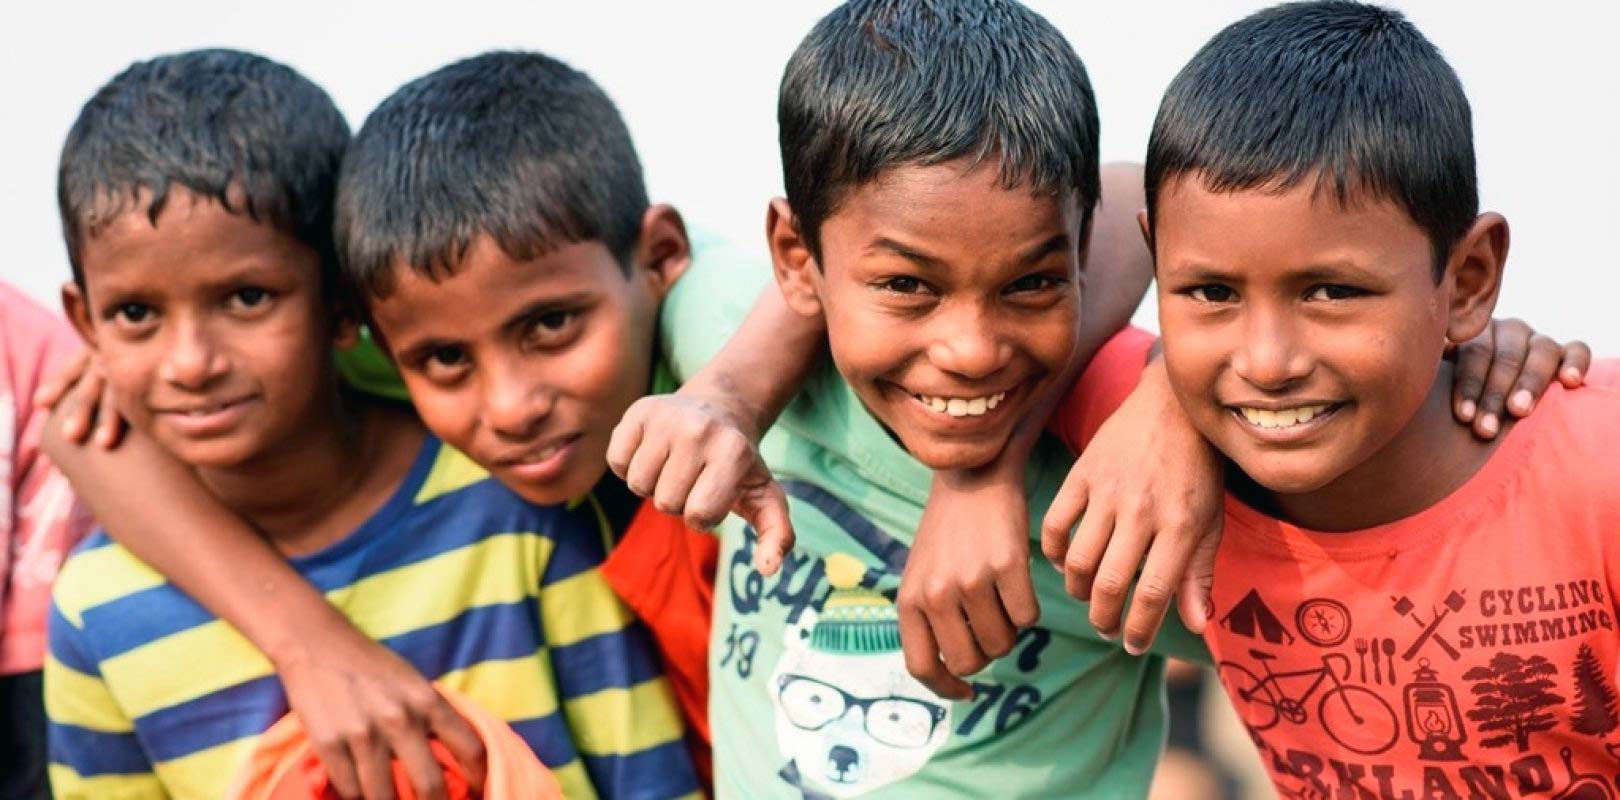 Einkauf von P&G Produkten bei REWE unterstützt die Kindernothilfe in Bangladesh